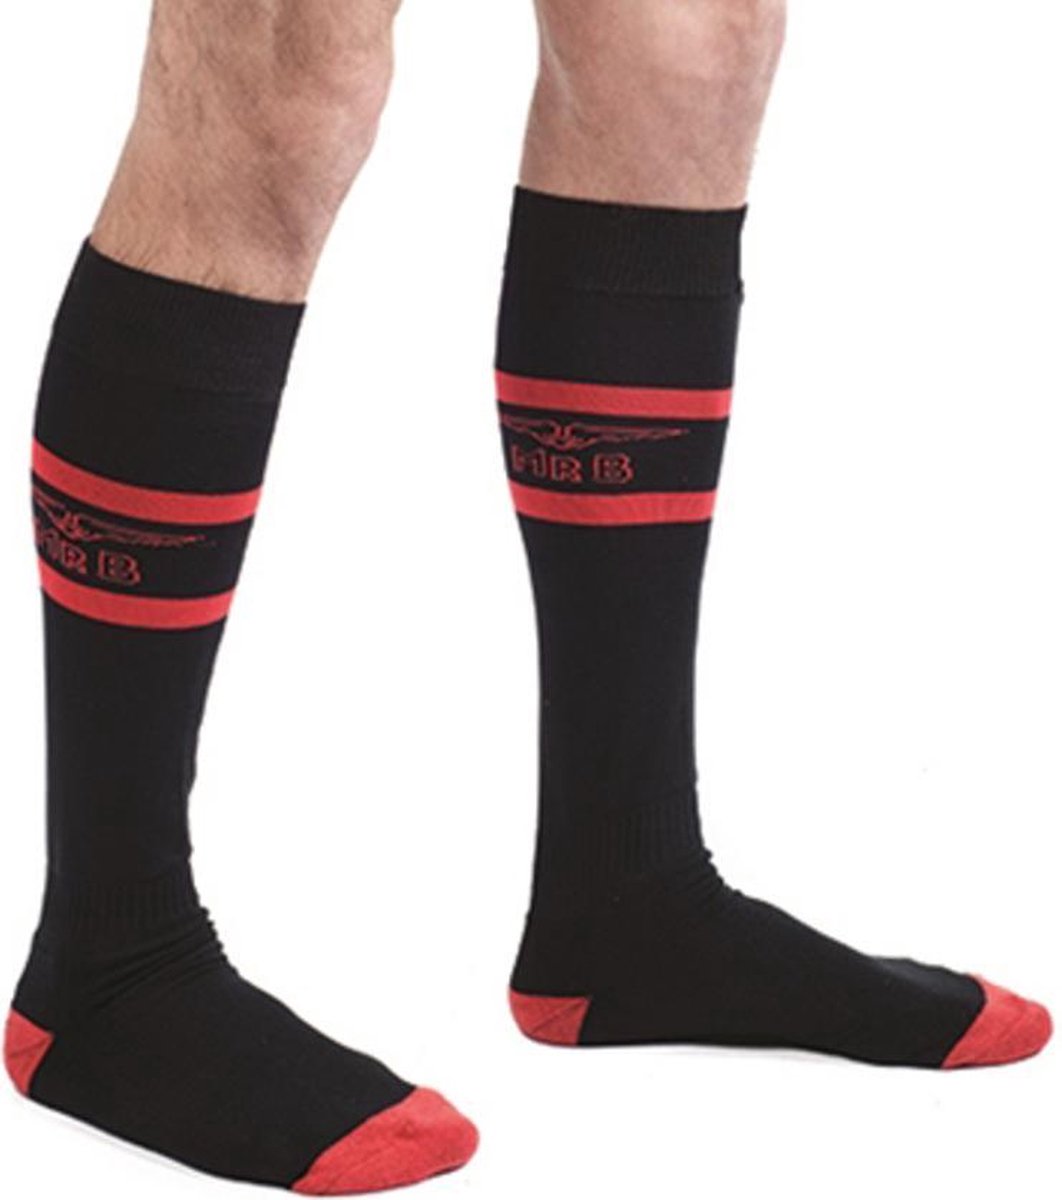 Mister b code red football socks 38-41